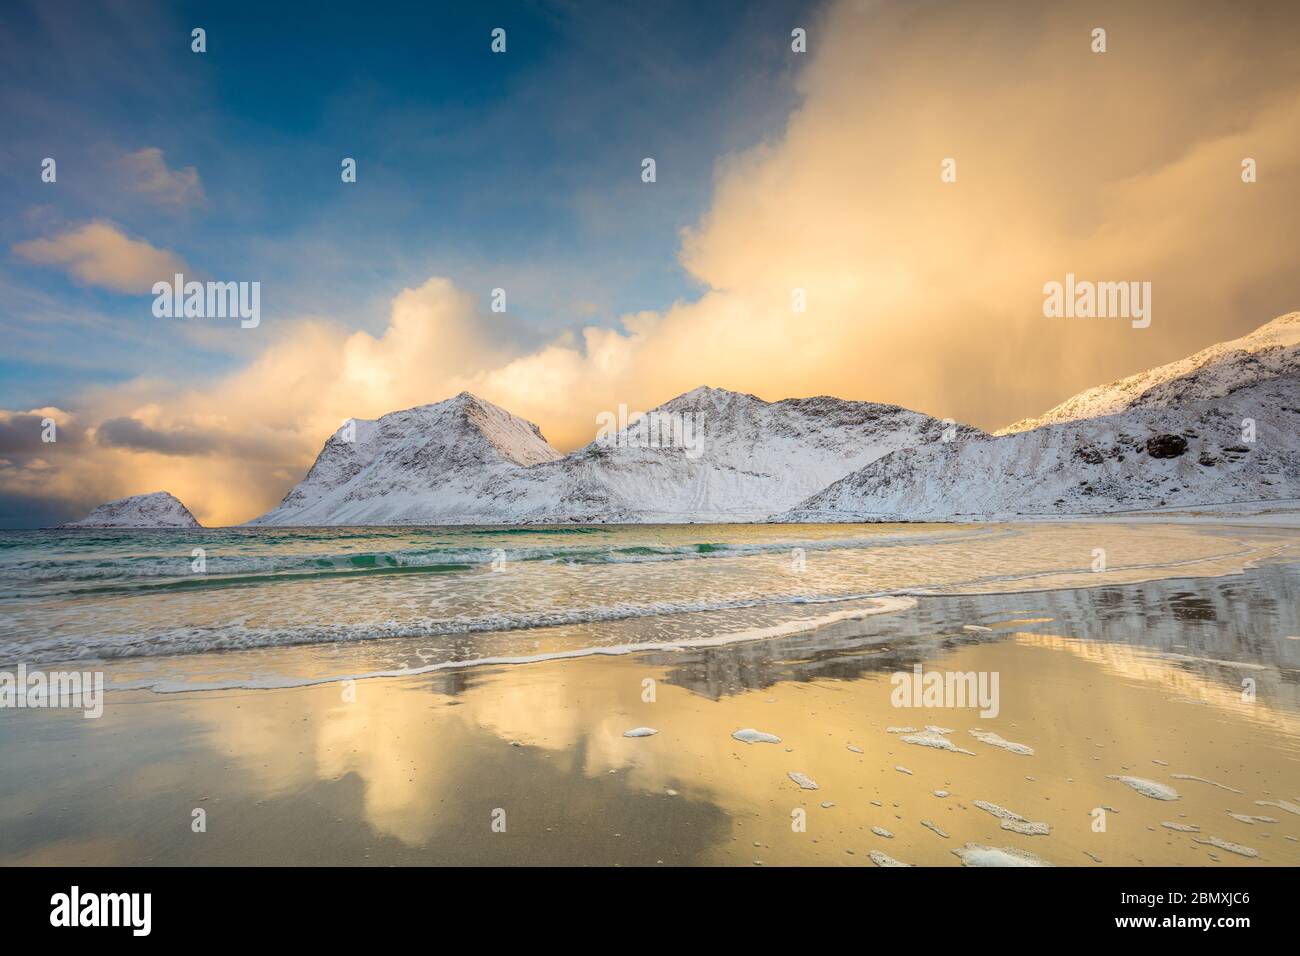 Incredibile mattina d'inverno al mare del nord e le montagne. Bei riflessi in acqua. Regione scandinava, Norvegia, isole Lofoten Foto Stock